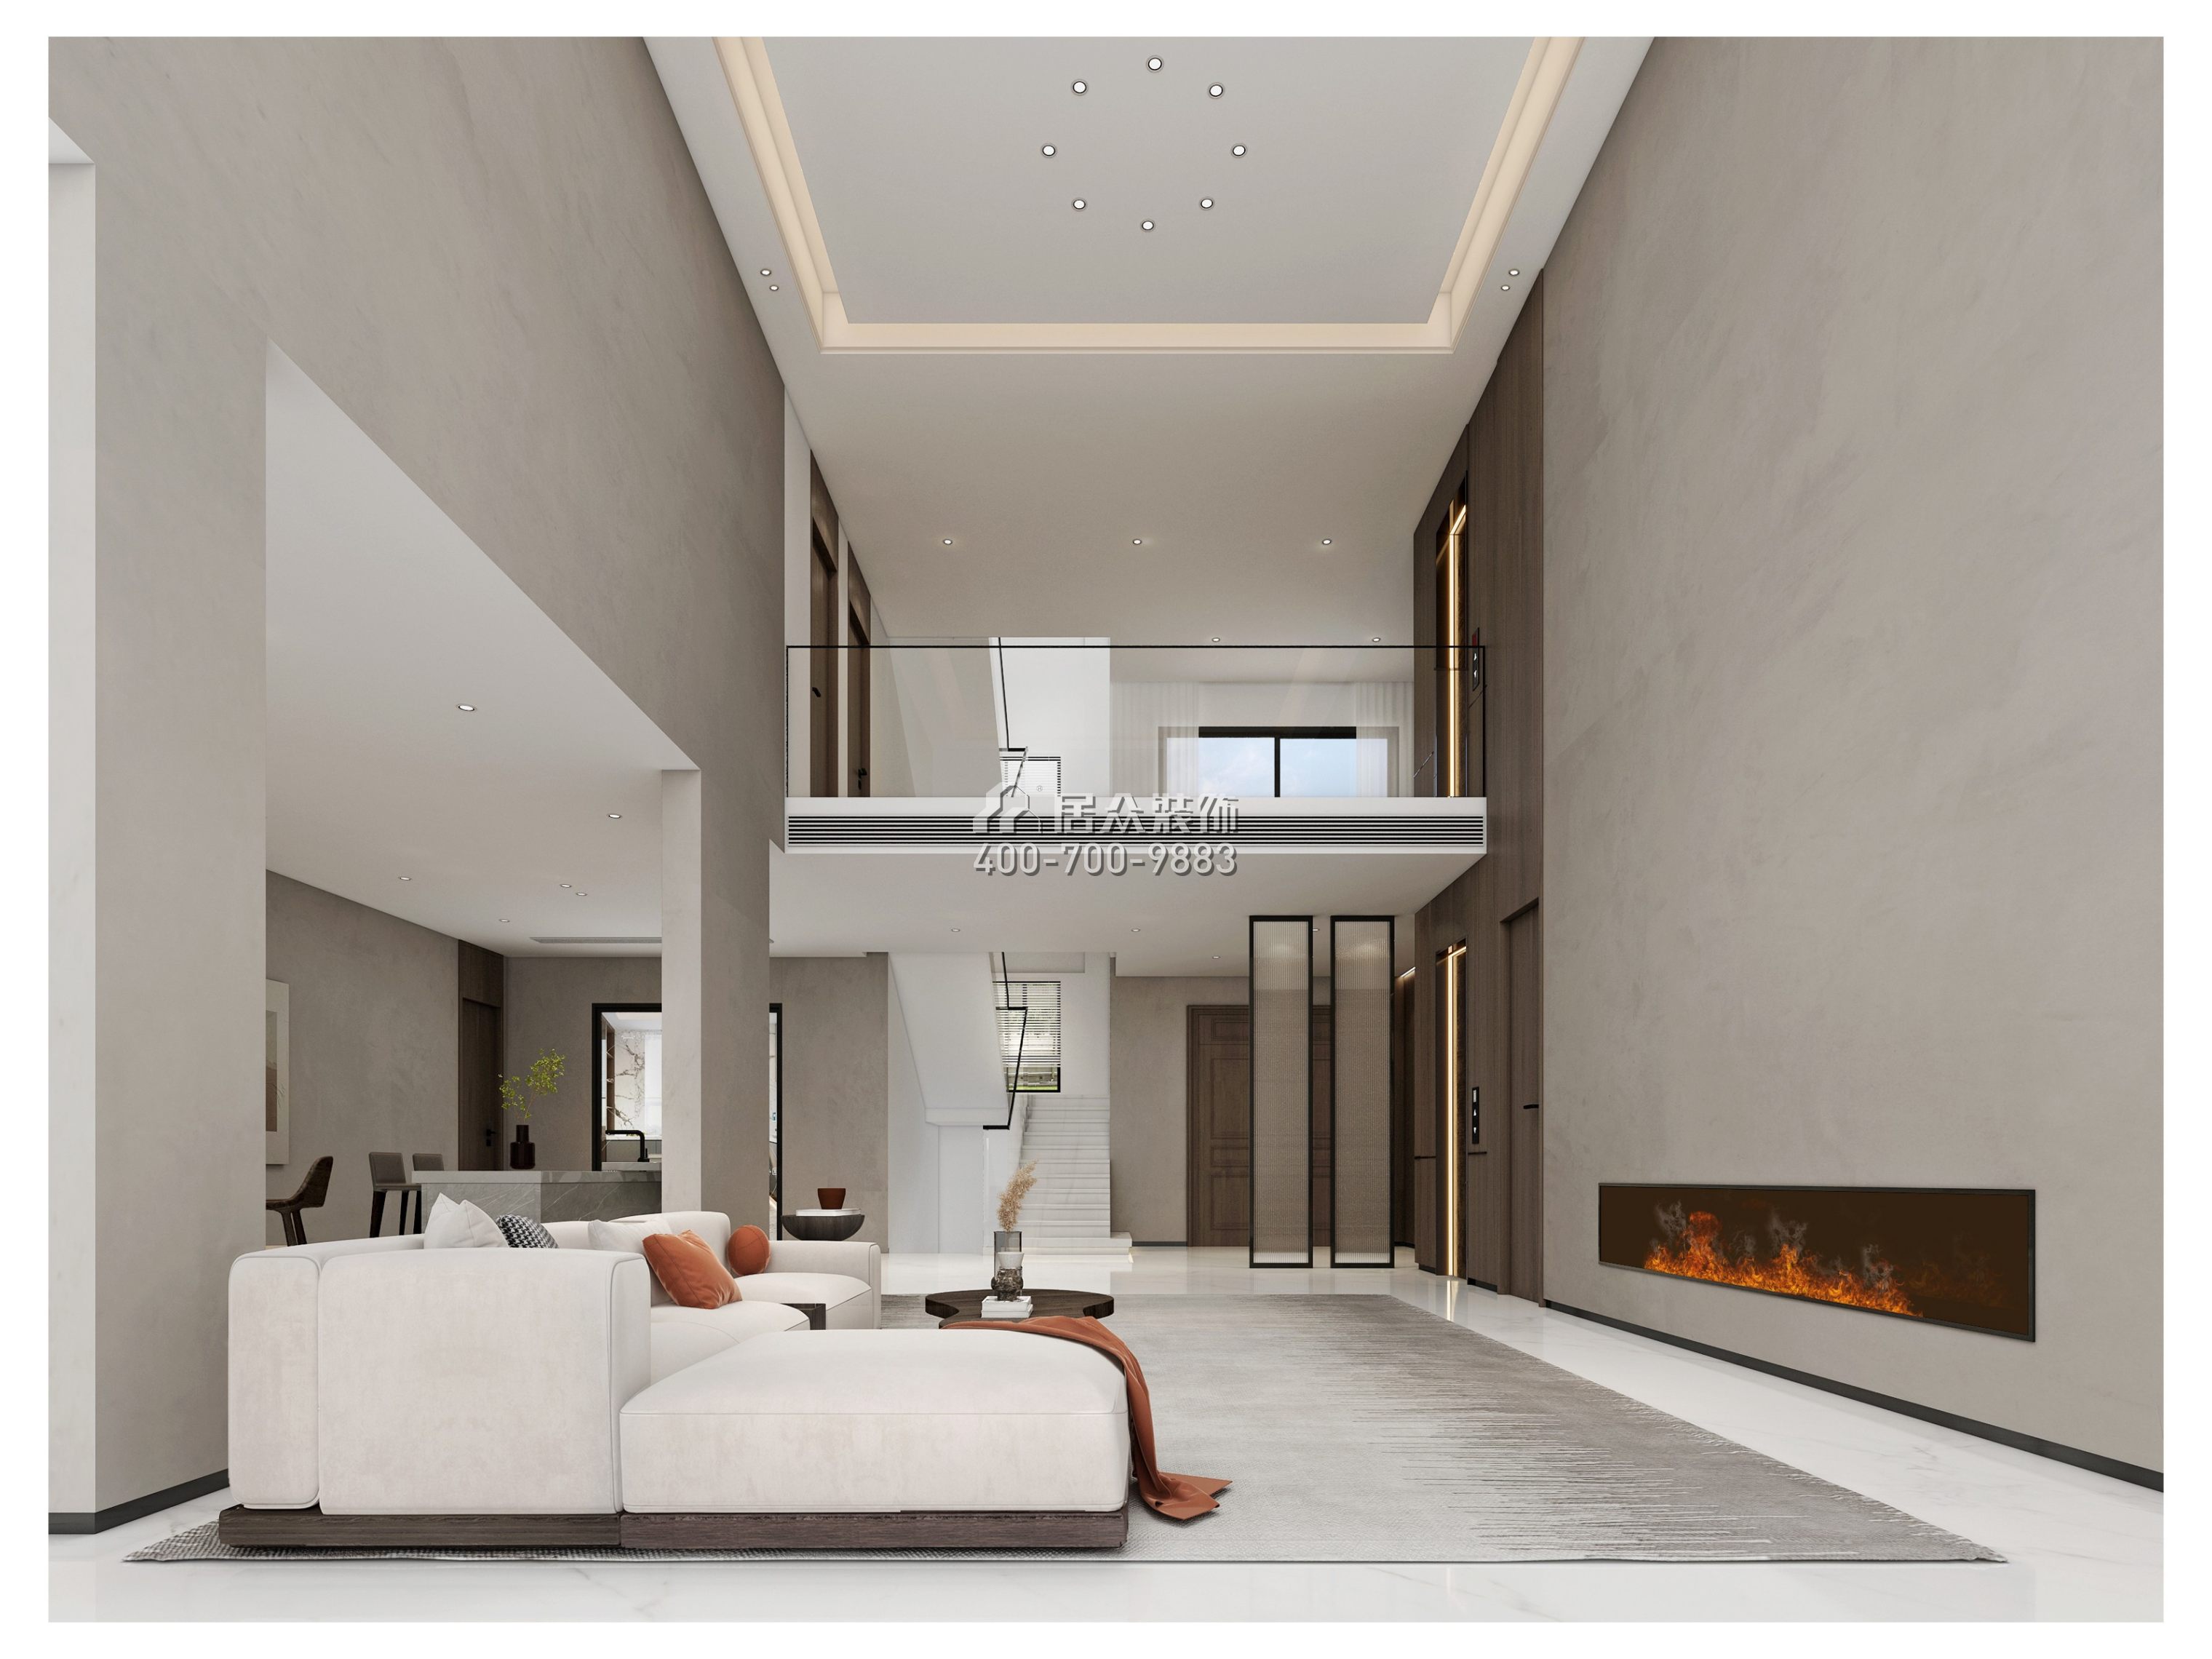 海逸豪庭御峰560平方米現代簡約風格別墅戶型客廳裝修效果圖